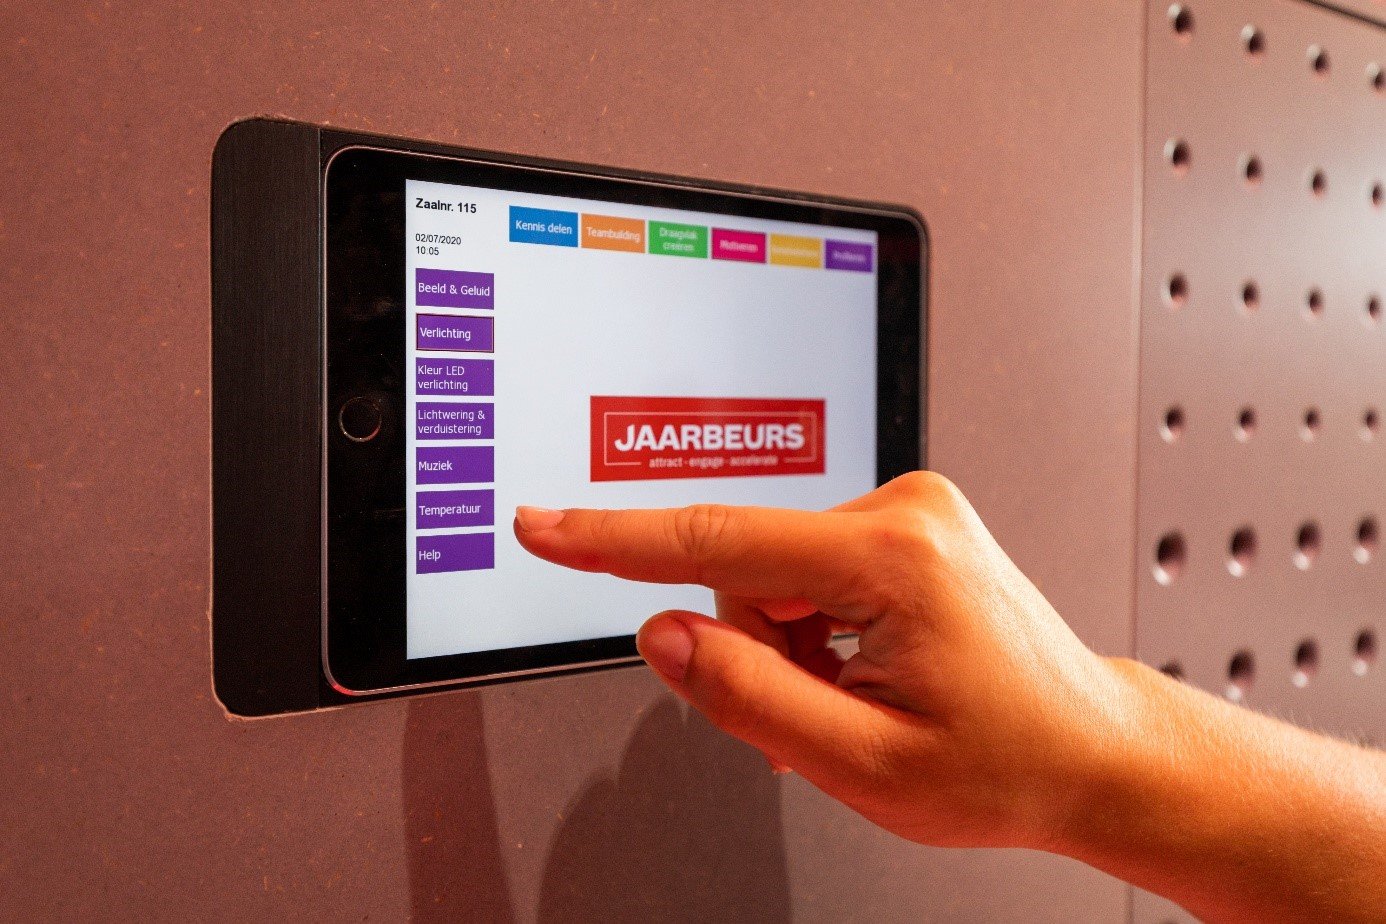 Jaarbeurs Utrecht room check in tablet system